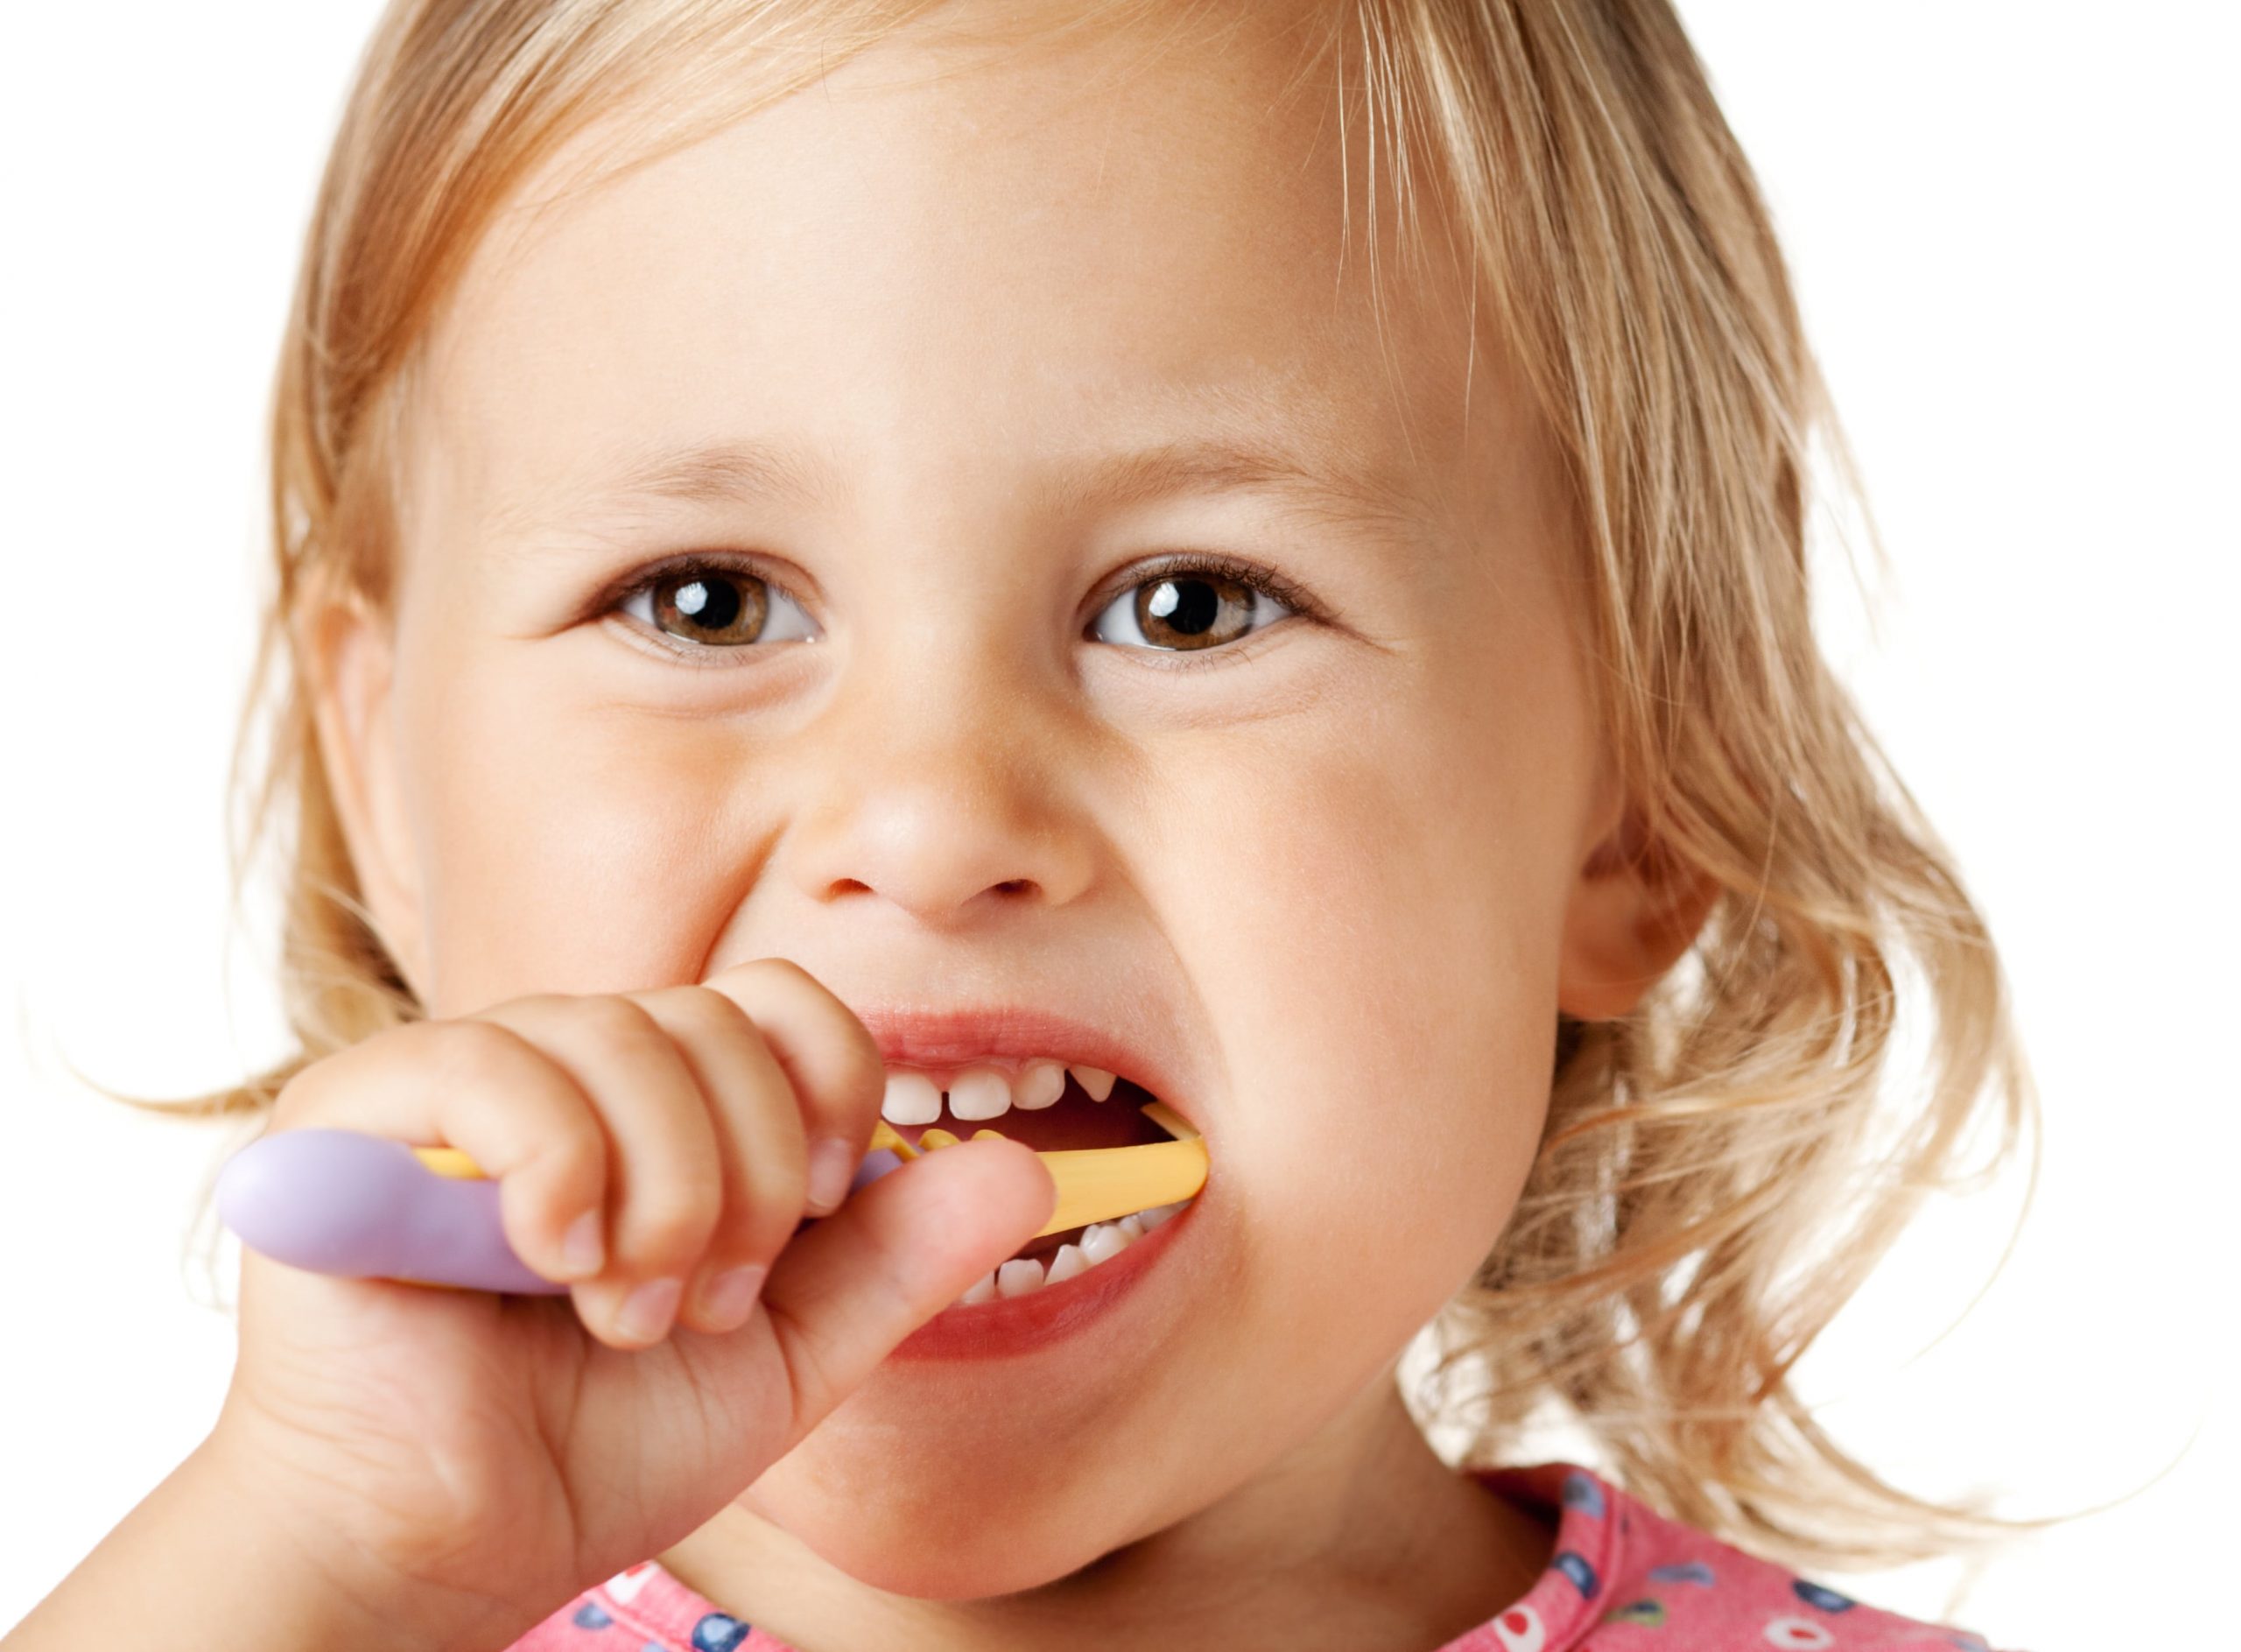 Mantener los dientes de leche sanos. Se recomienda el cuidado oral desde que sale el primer diente primario. Hay que acudir al odontopediatra a revisiones dentales. Vigilar la alimentación.